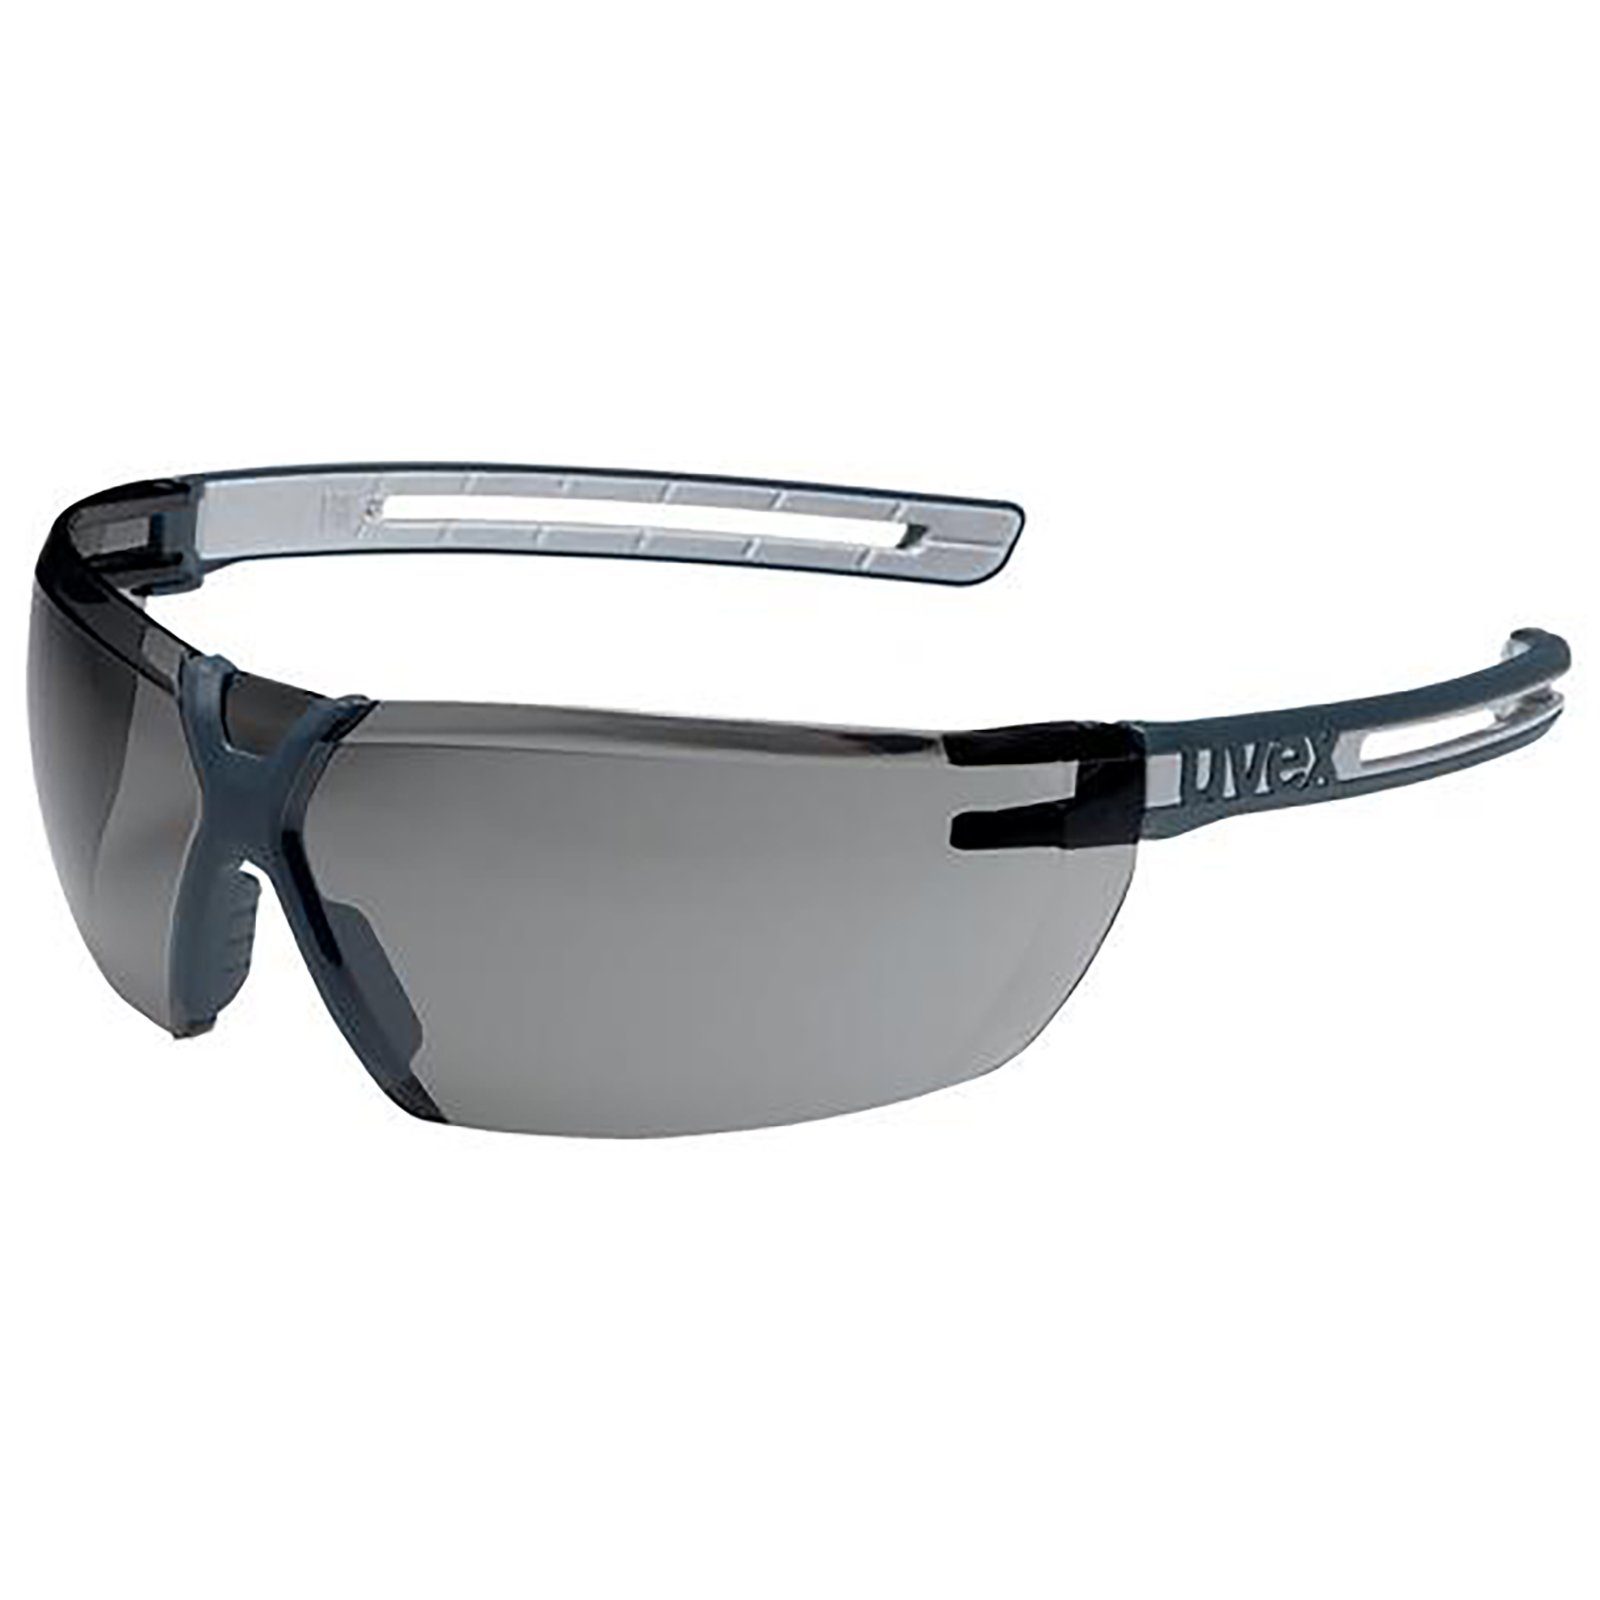 Uvex Arbeitsschutzbrille Bügelbrille x-fit pro grau 23% sv exc. 9199277